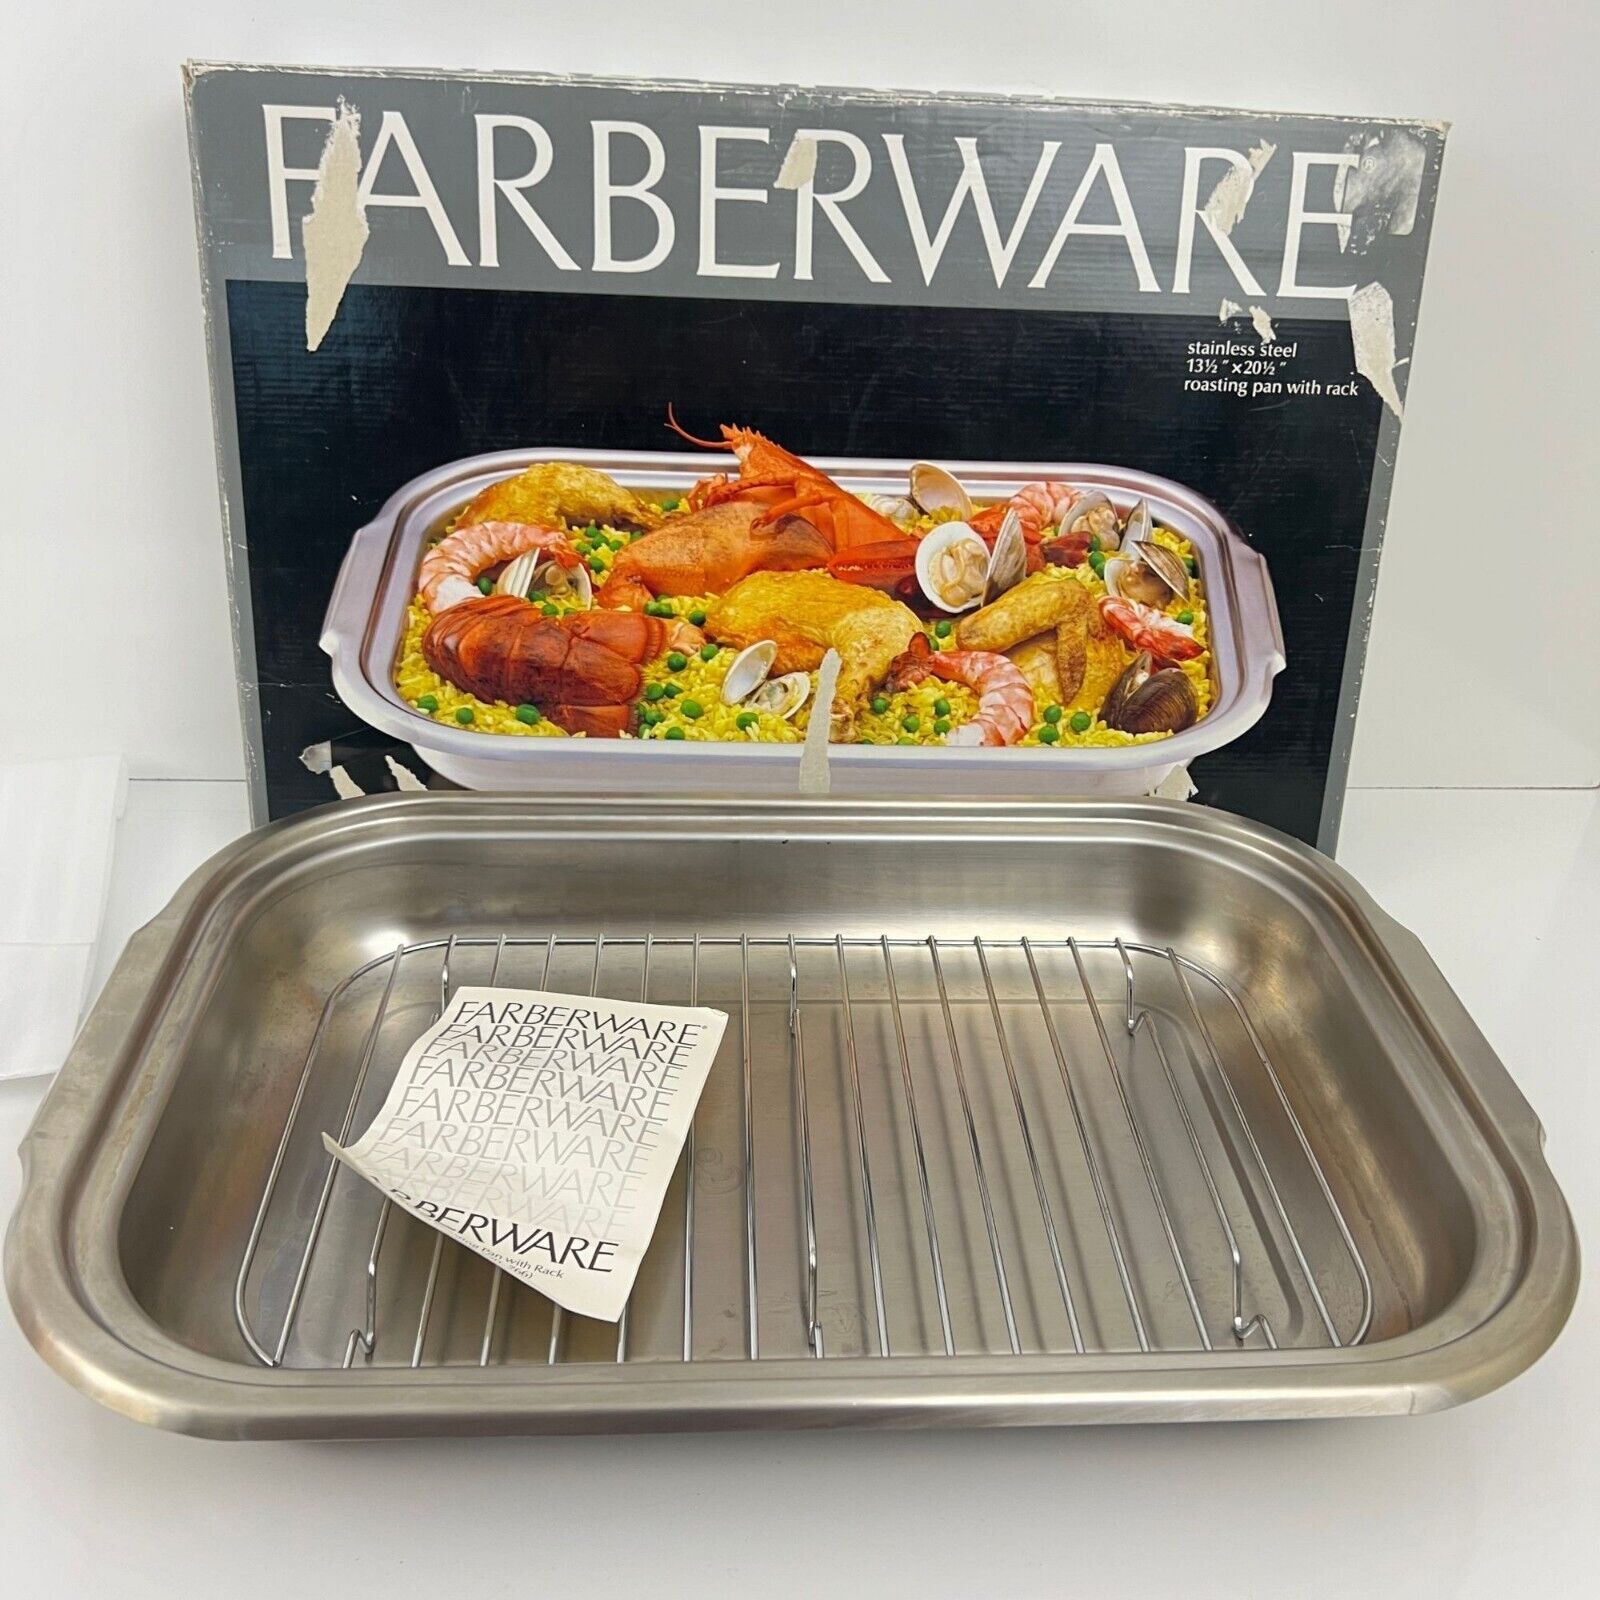 Vintage FABERWARE 720 Stainless Steel Roasting Pan with Rack Box